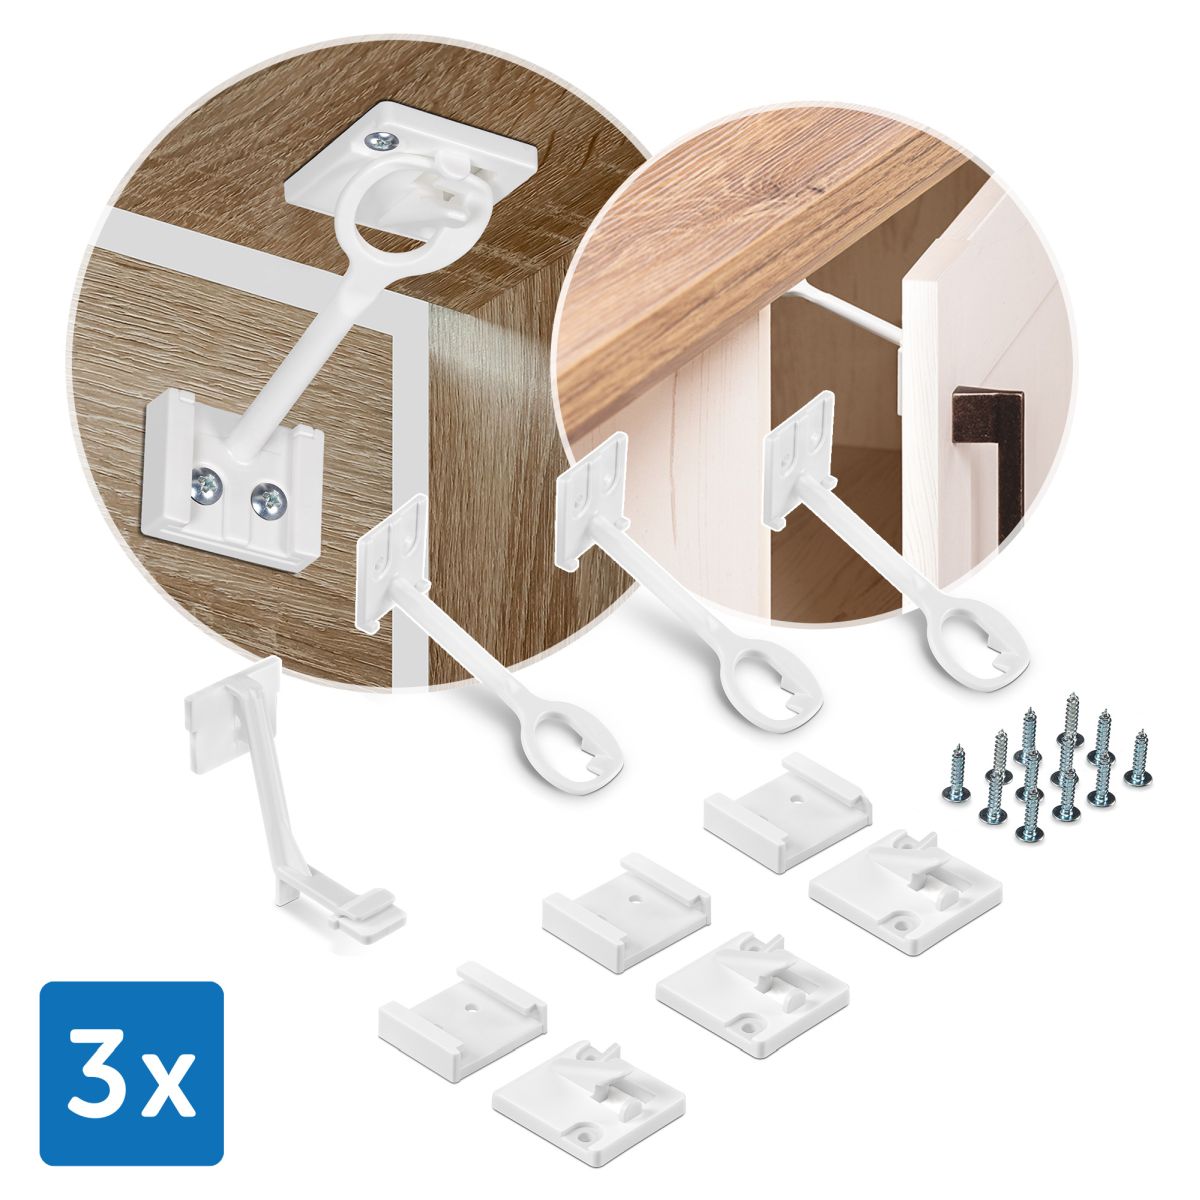 Schrank- und Schubladensicherung mit Montagehilfe, 3 Stück - Deine Auswahl:  3 Stück